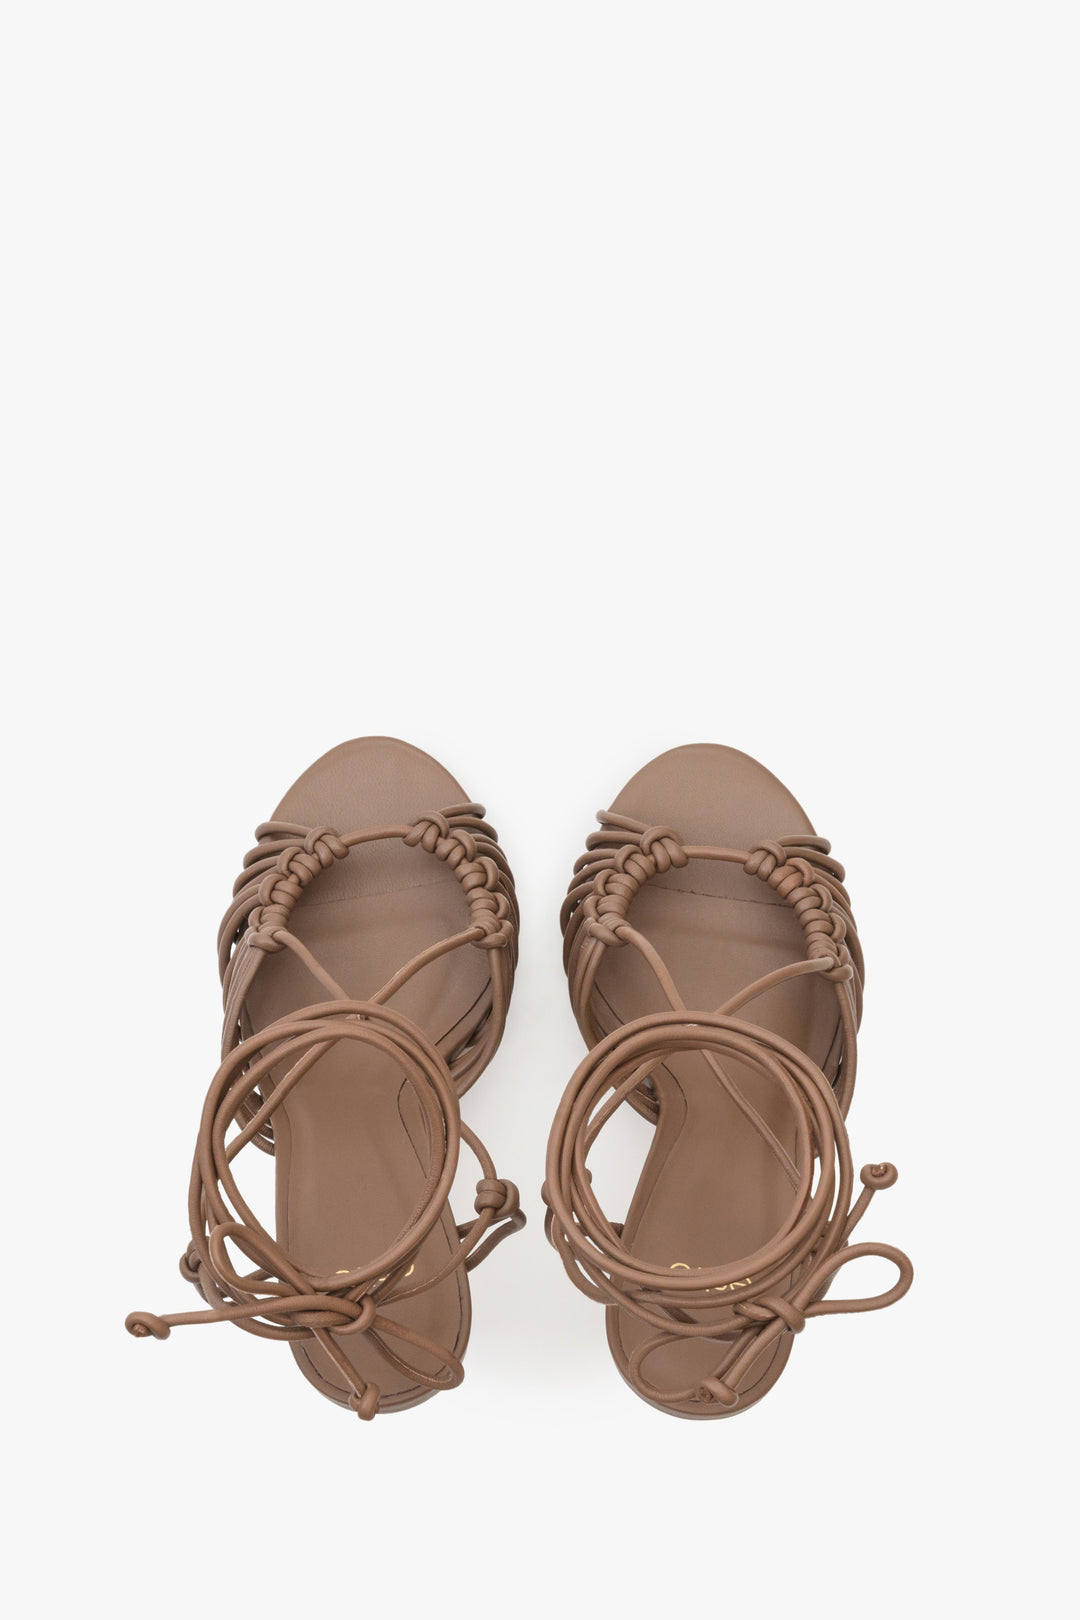 Damskie, skórzane sandały z wiązaniem w kolorze brązowym Estro - prezentacja modelu z góry.